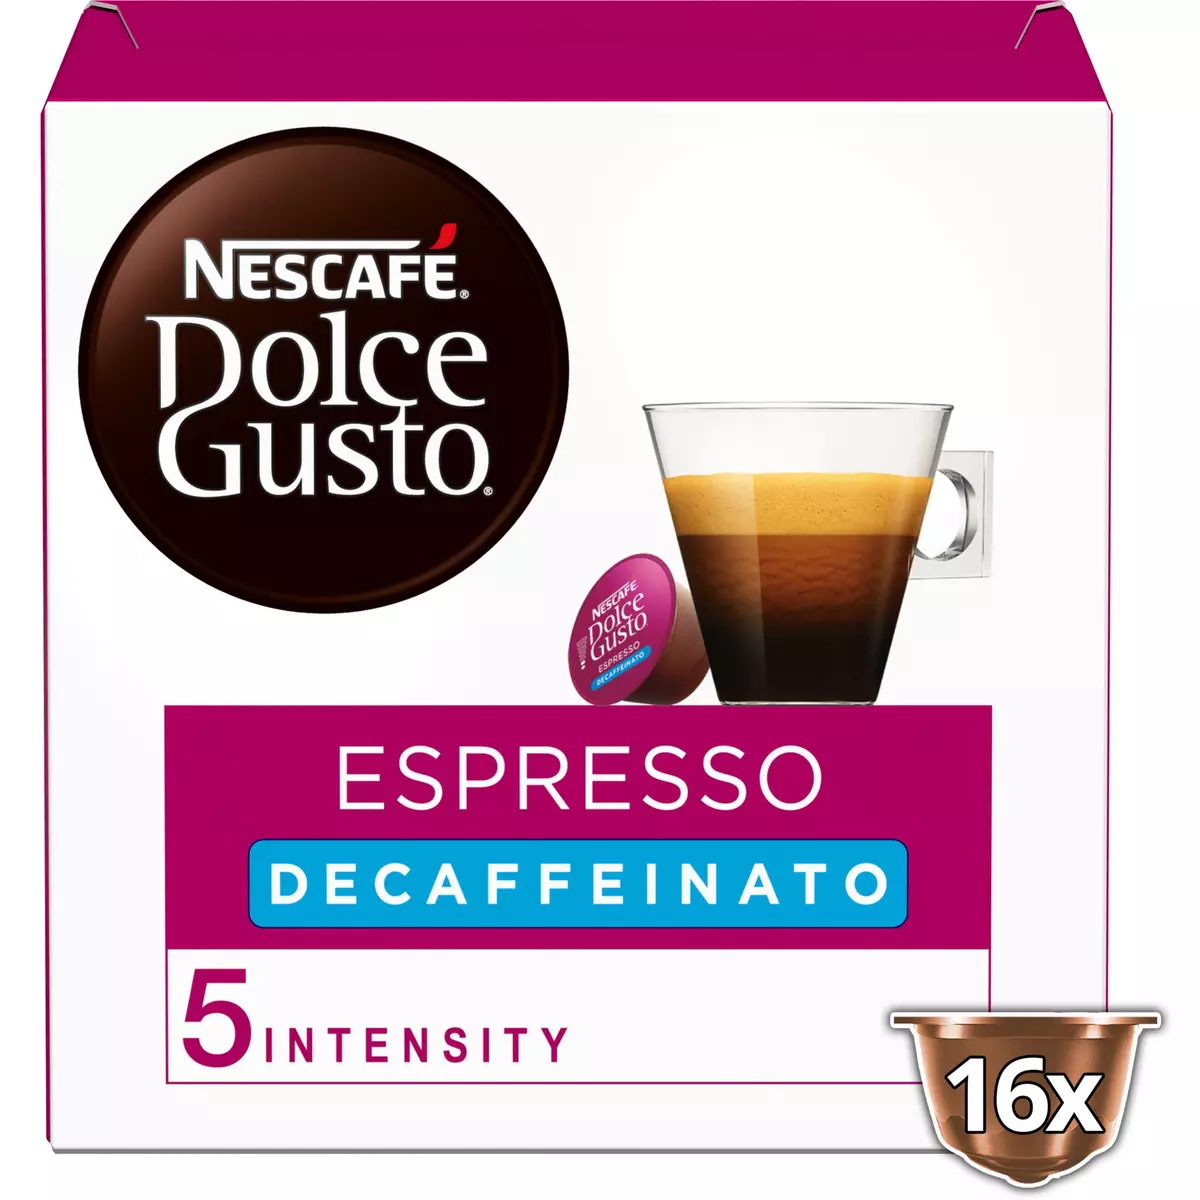 NESCAFE Dolce Gusto Espresso décaféiné intensité 5 16 capsules 88g